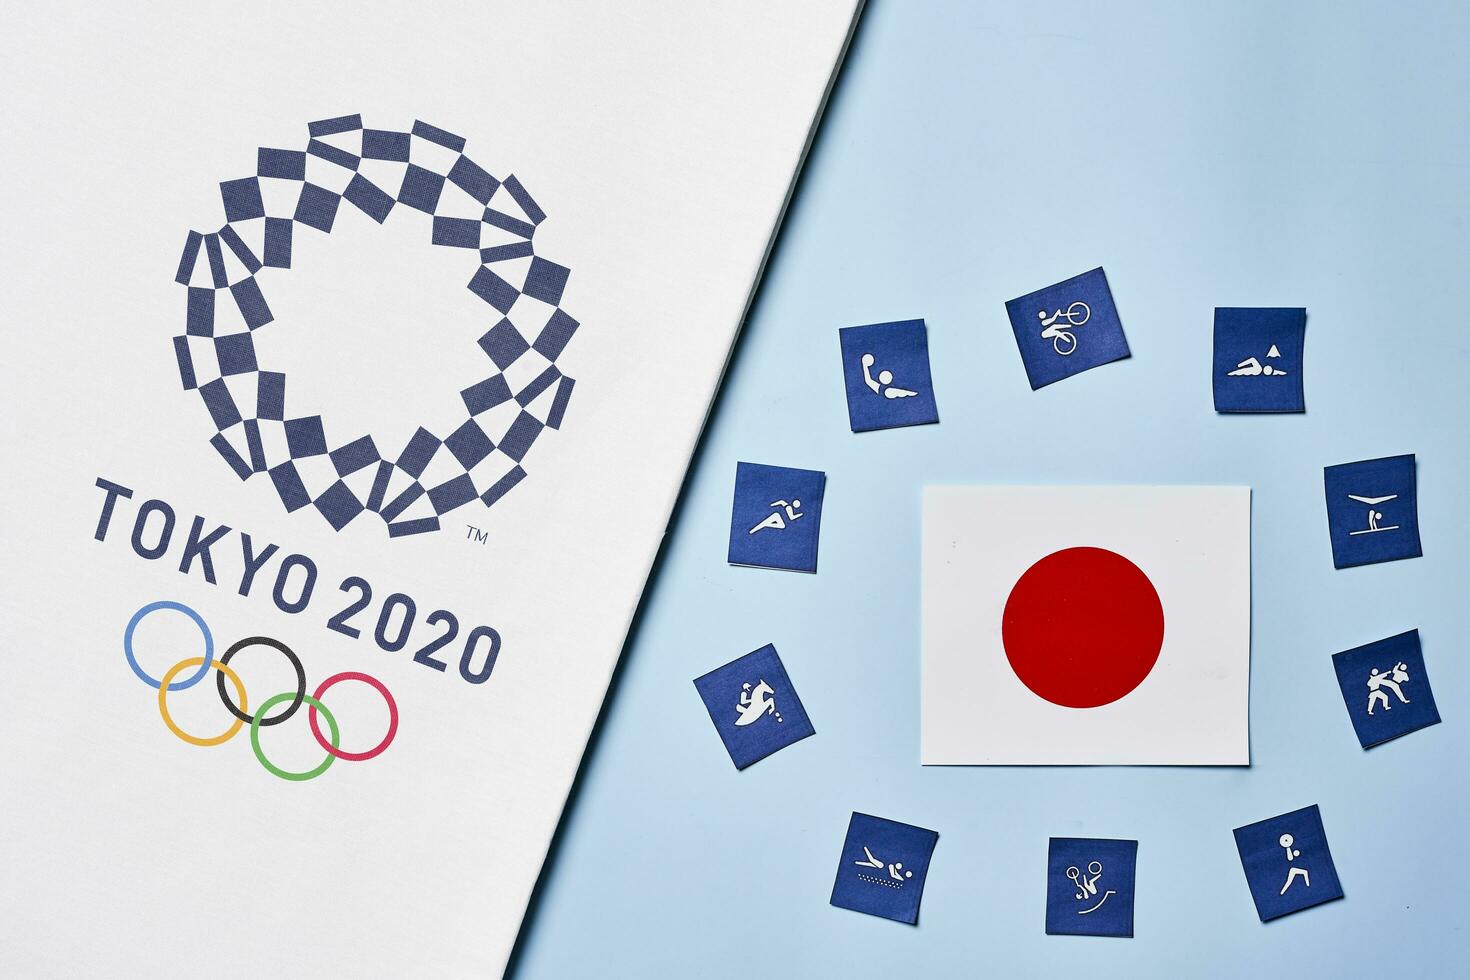 verano olímpico juegos - tokio 2020 foto